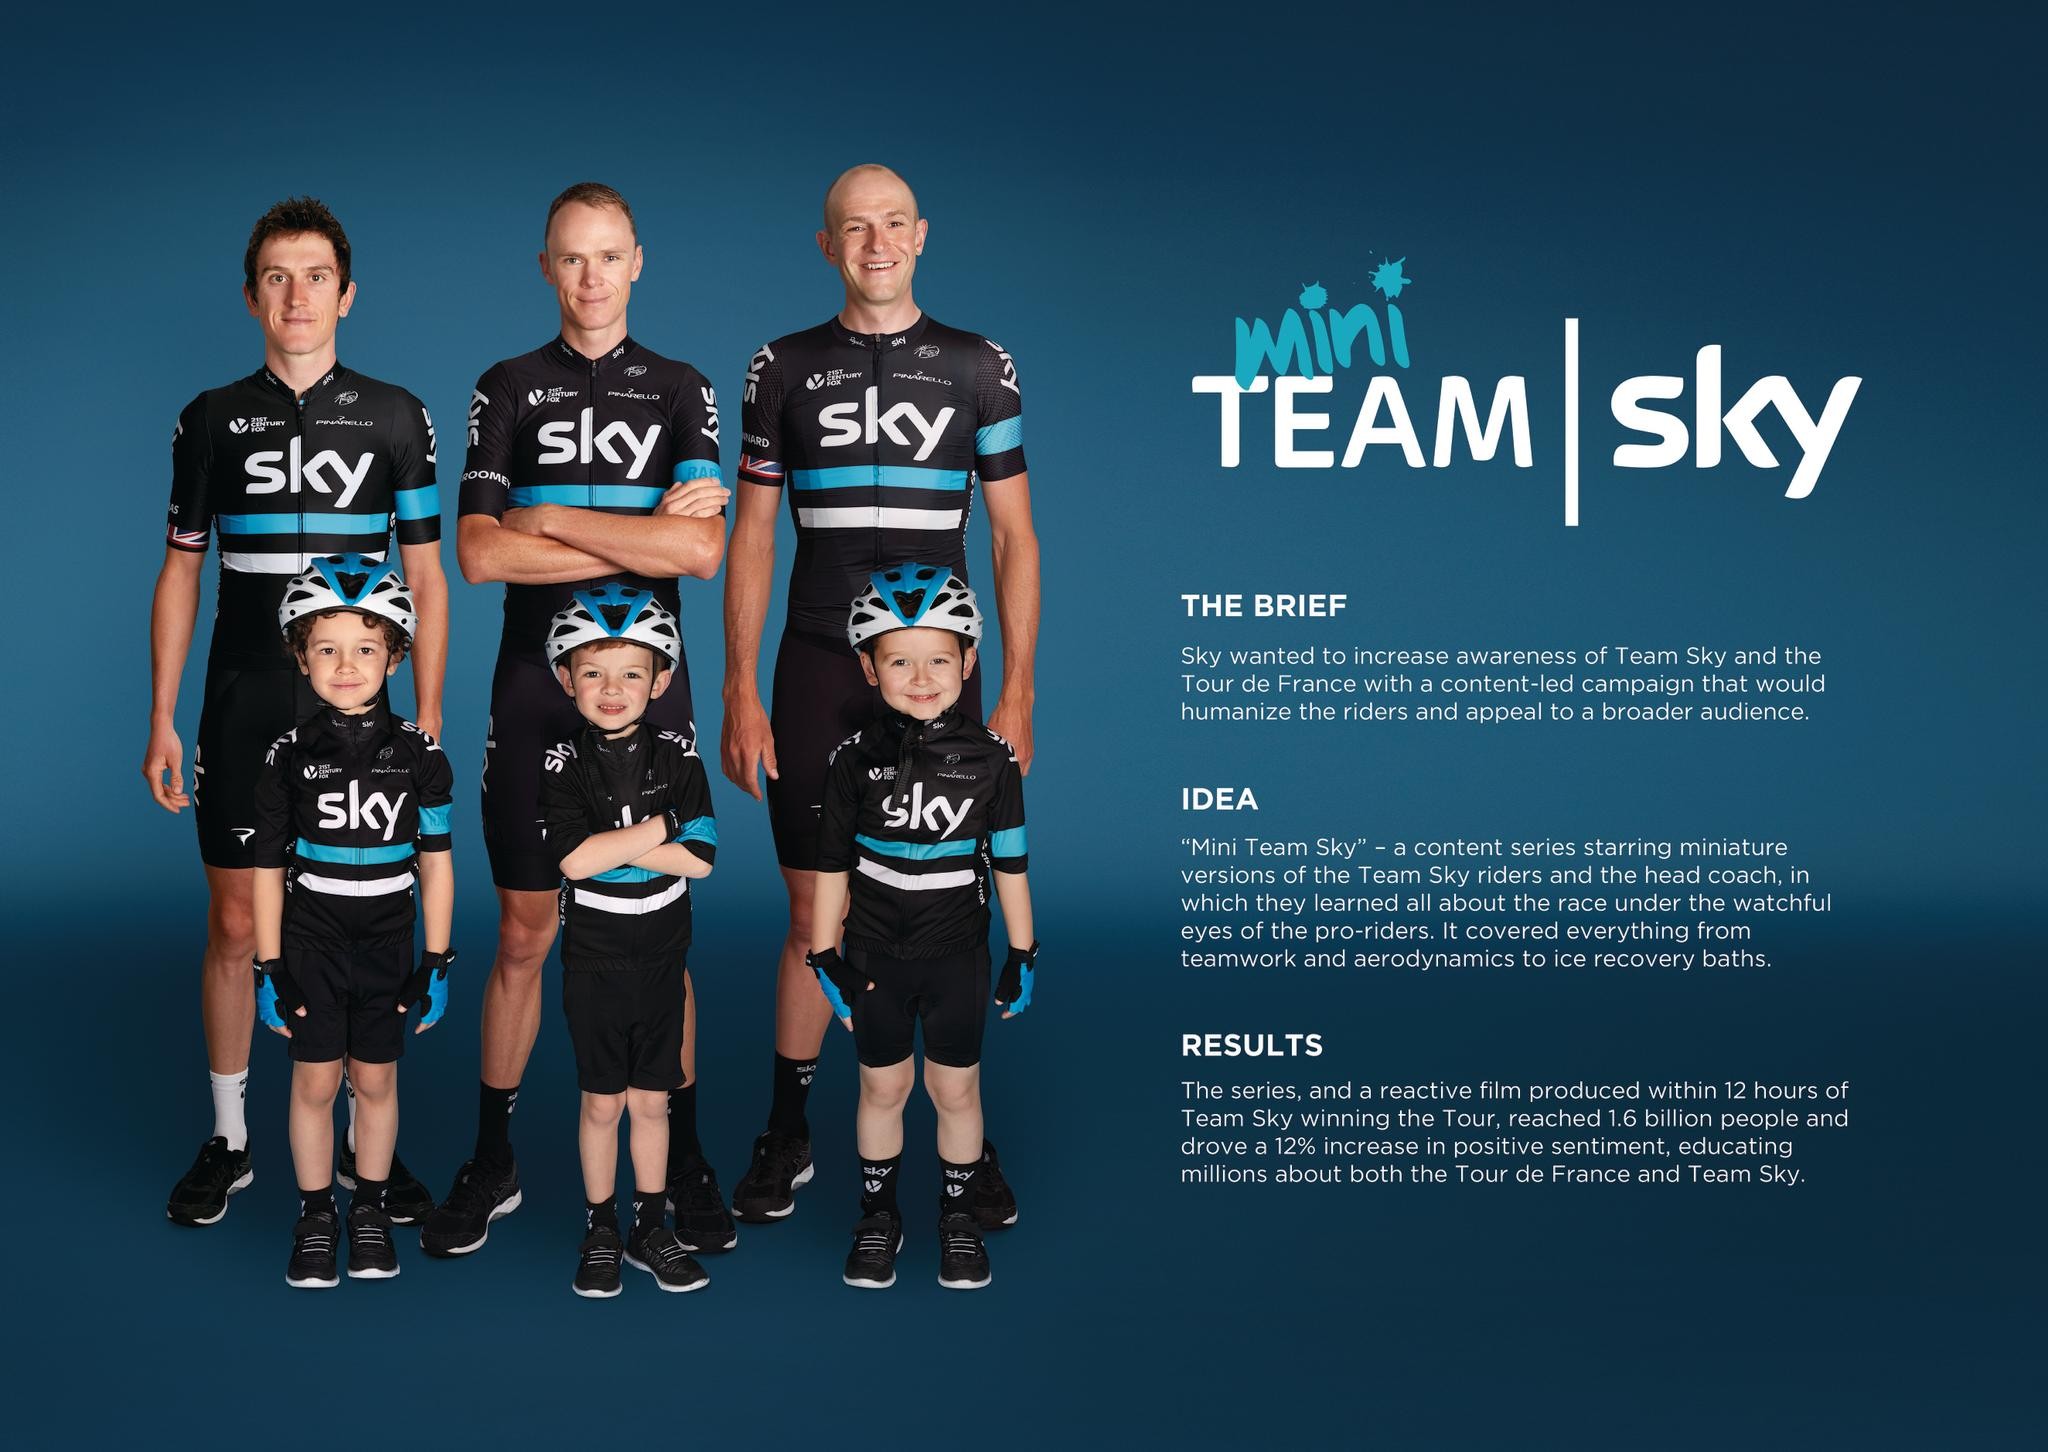 Mini Team Sky